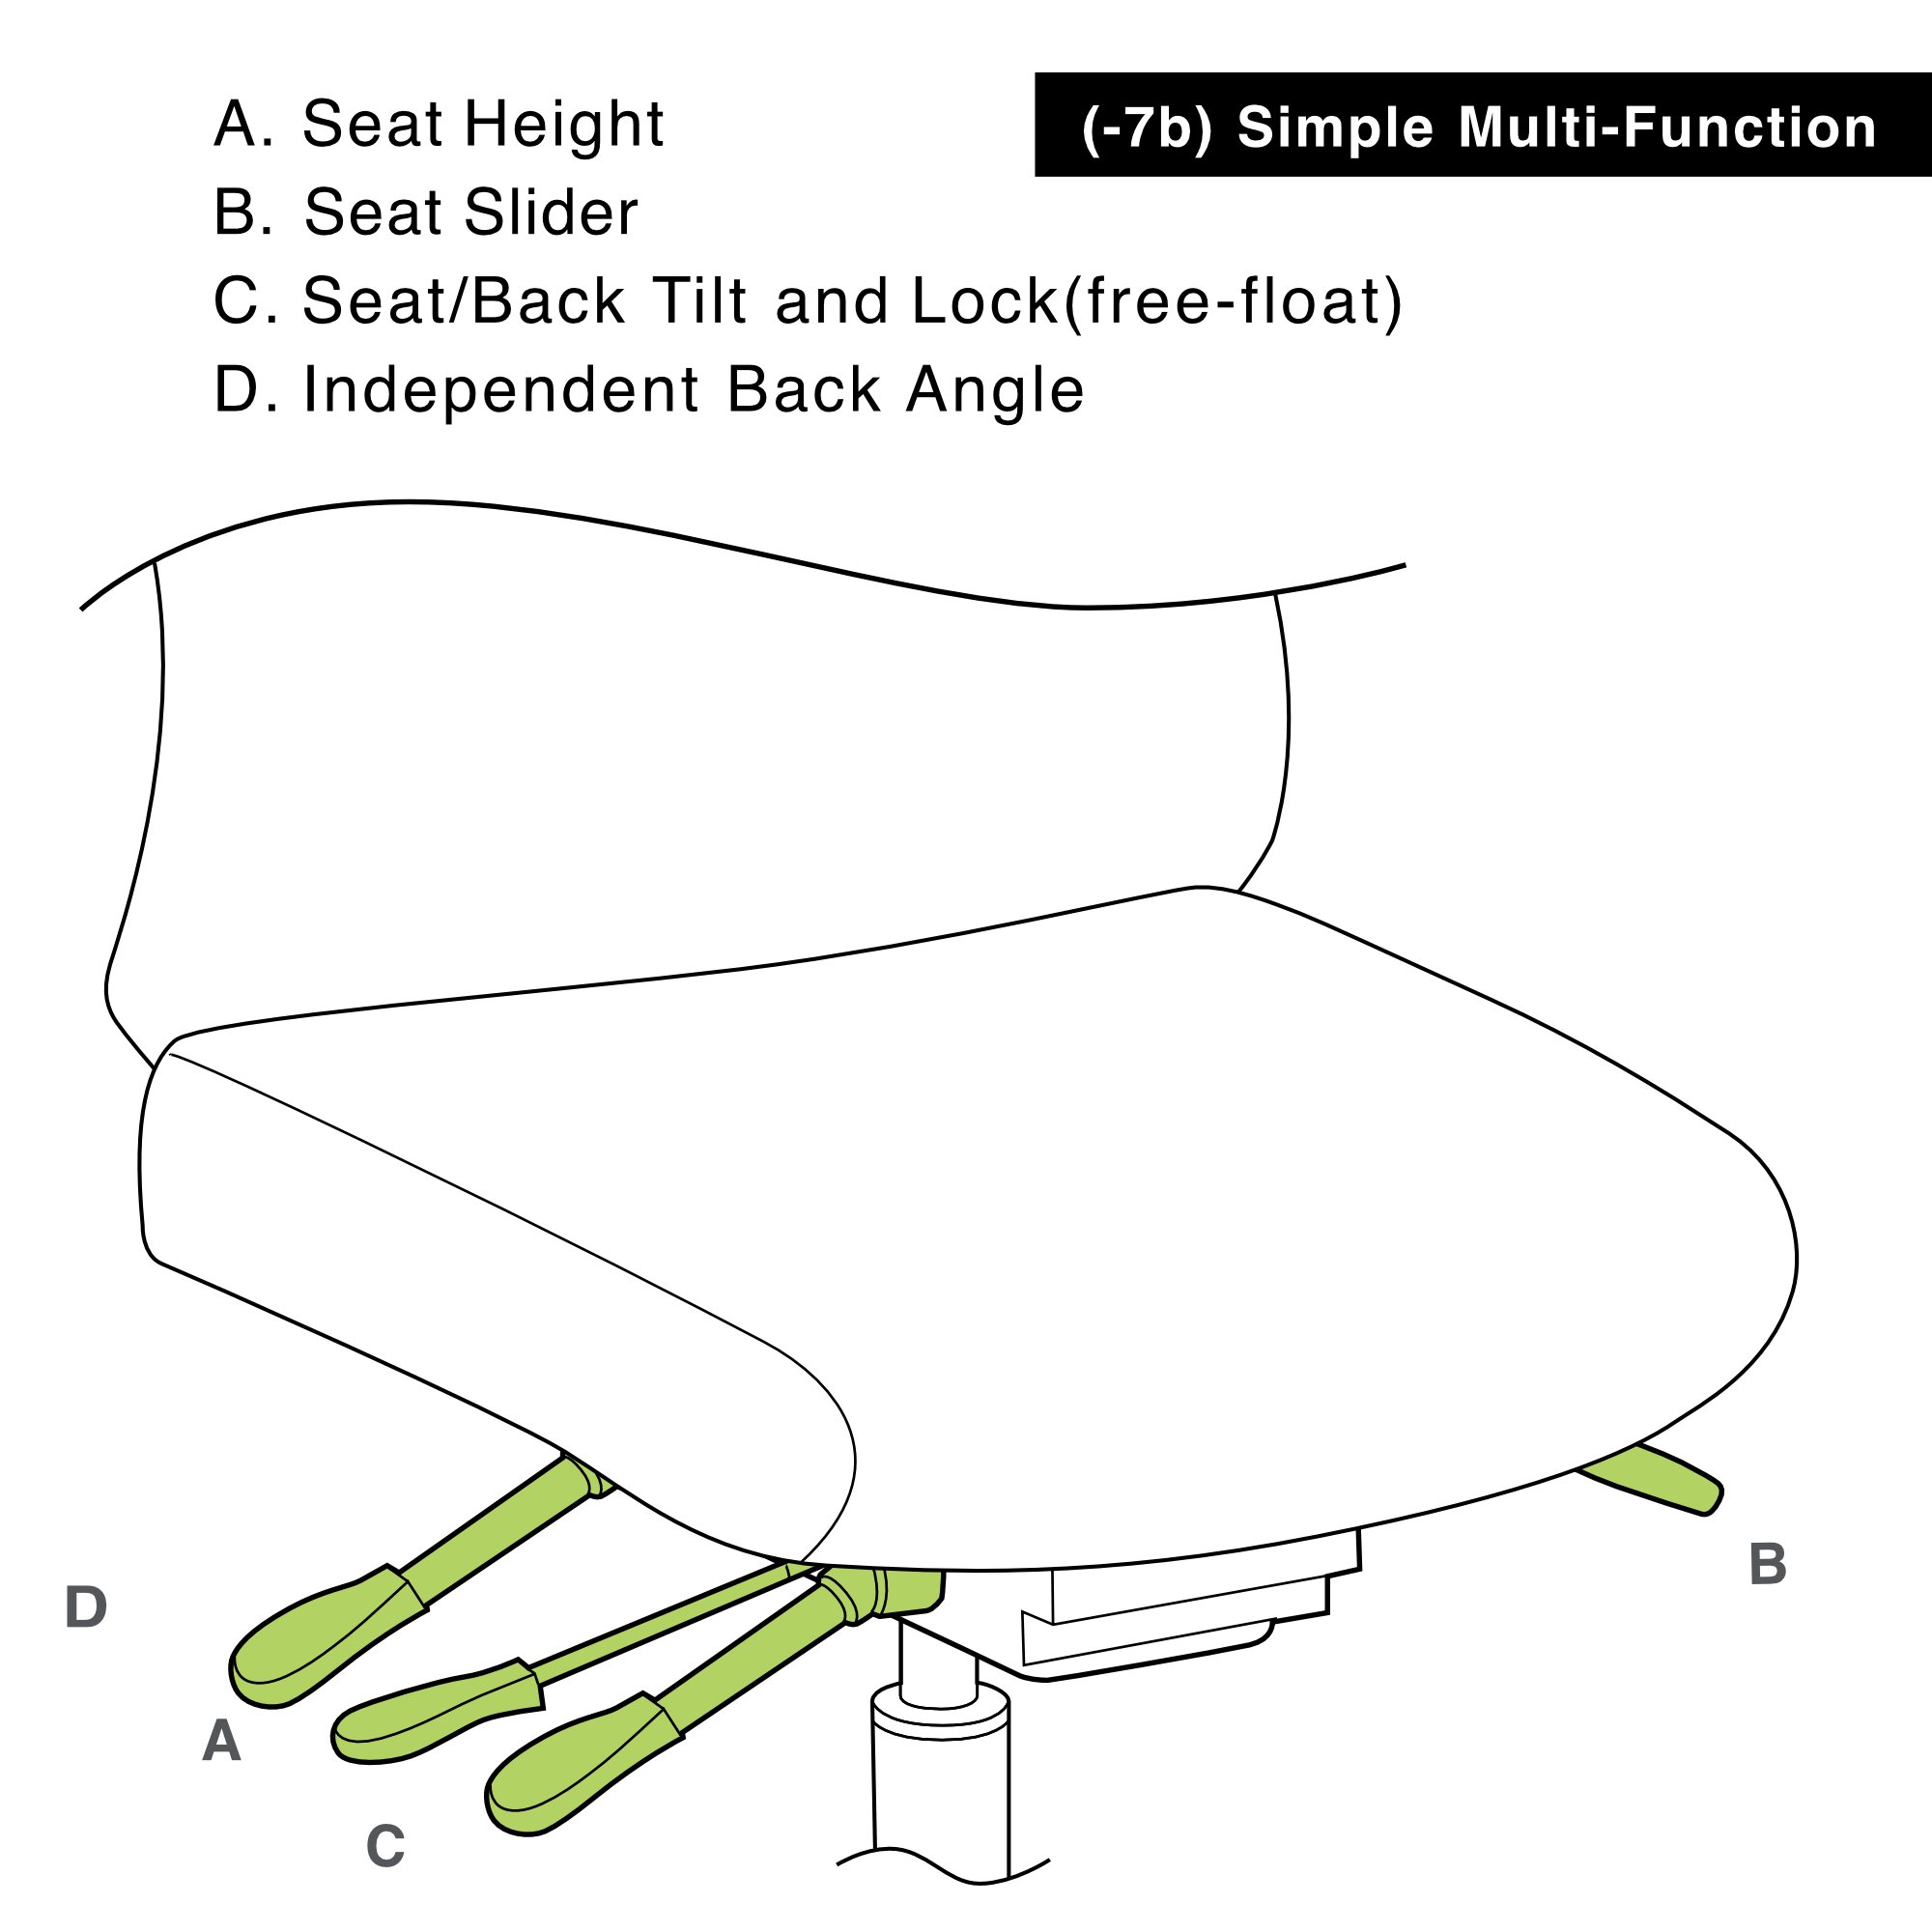 Office Master AF478 (OM Seating) Affirm Fully Upholstered Backrest Task Chair